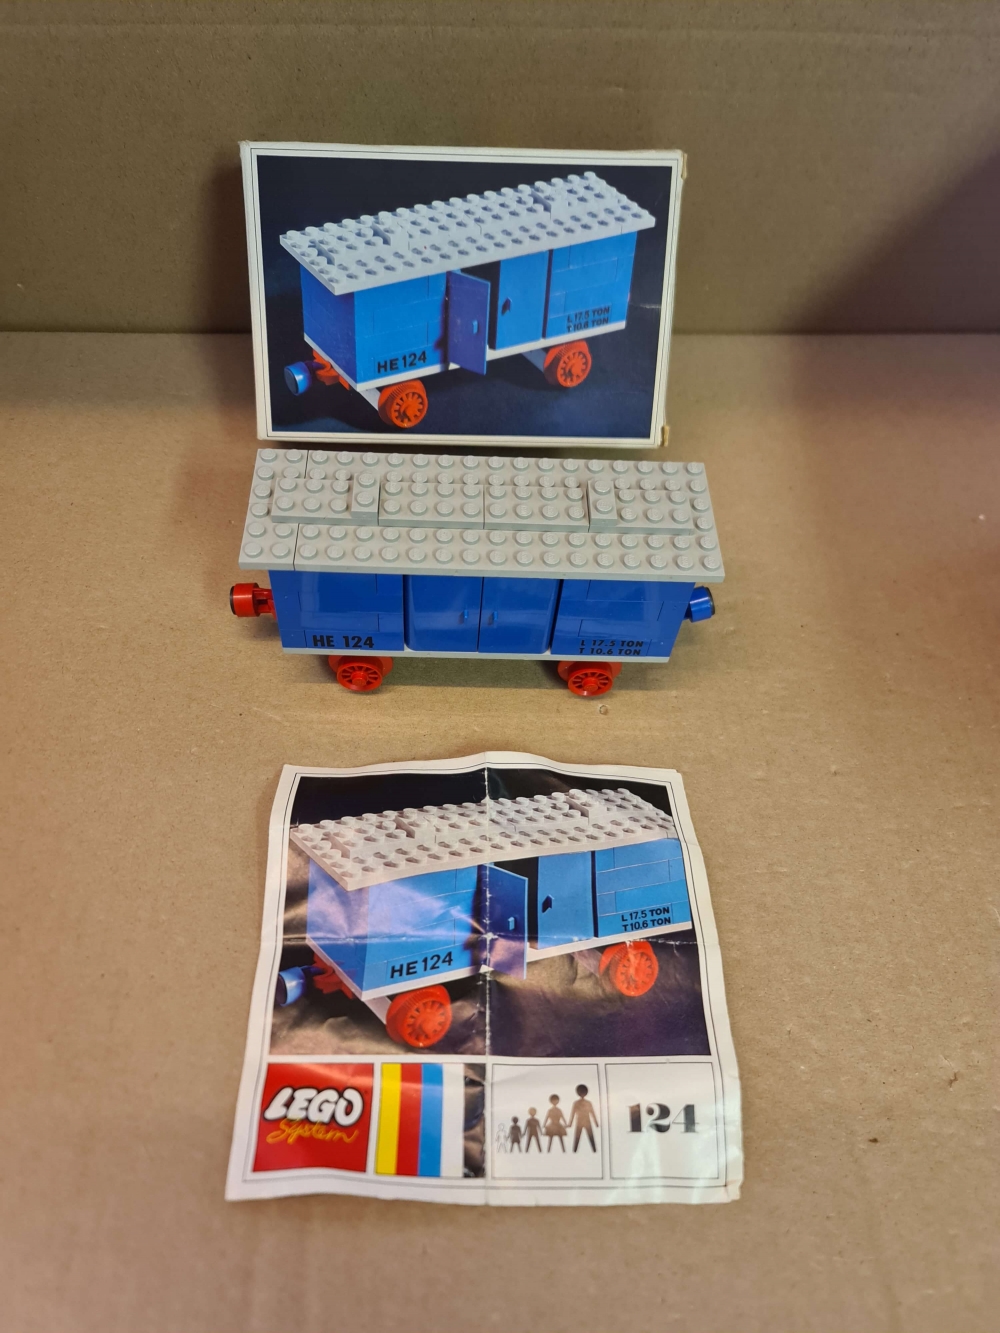 Sett 124 fra Lego Train : 4.5V serien
Nydelig sett. Perfekt.
Komplett med manual og eske